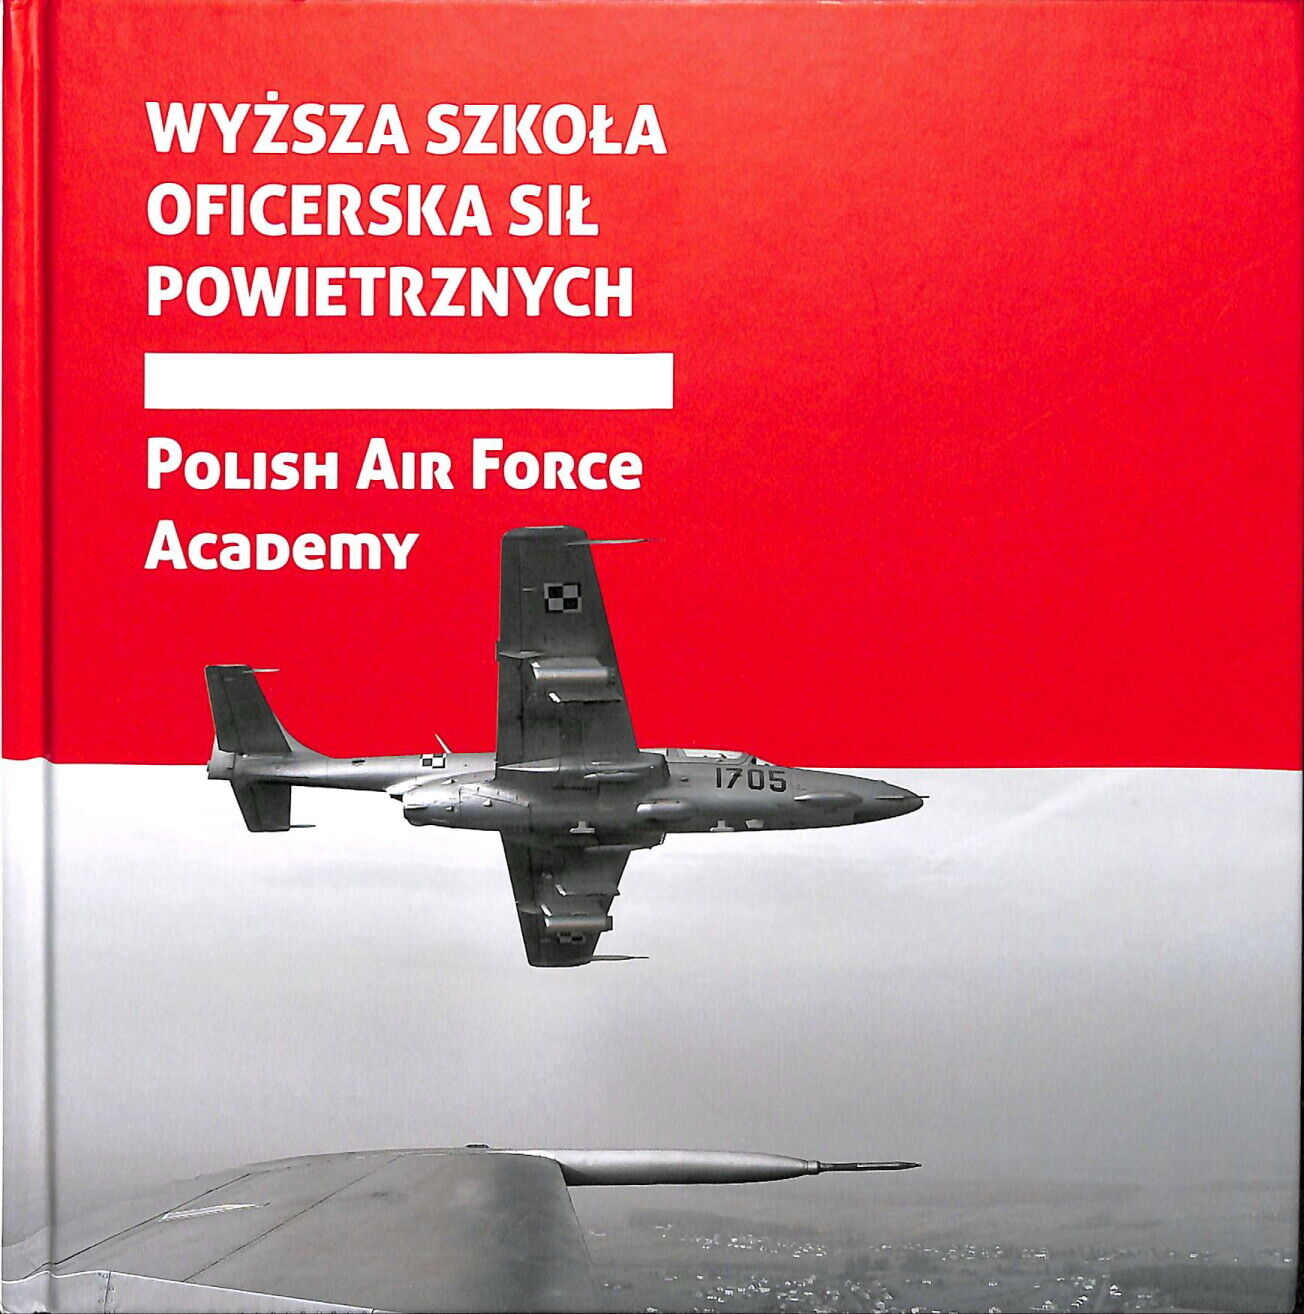 Polish Air Force Academy - Wyzsza Szkola Oficerska Sil Powietrznych (2013)